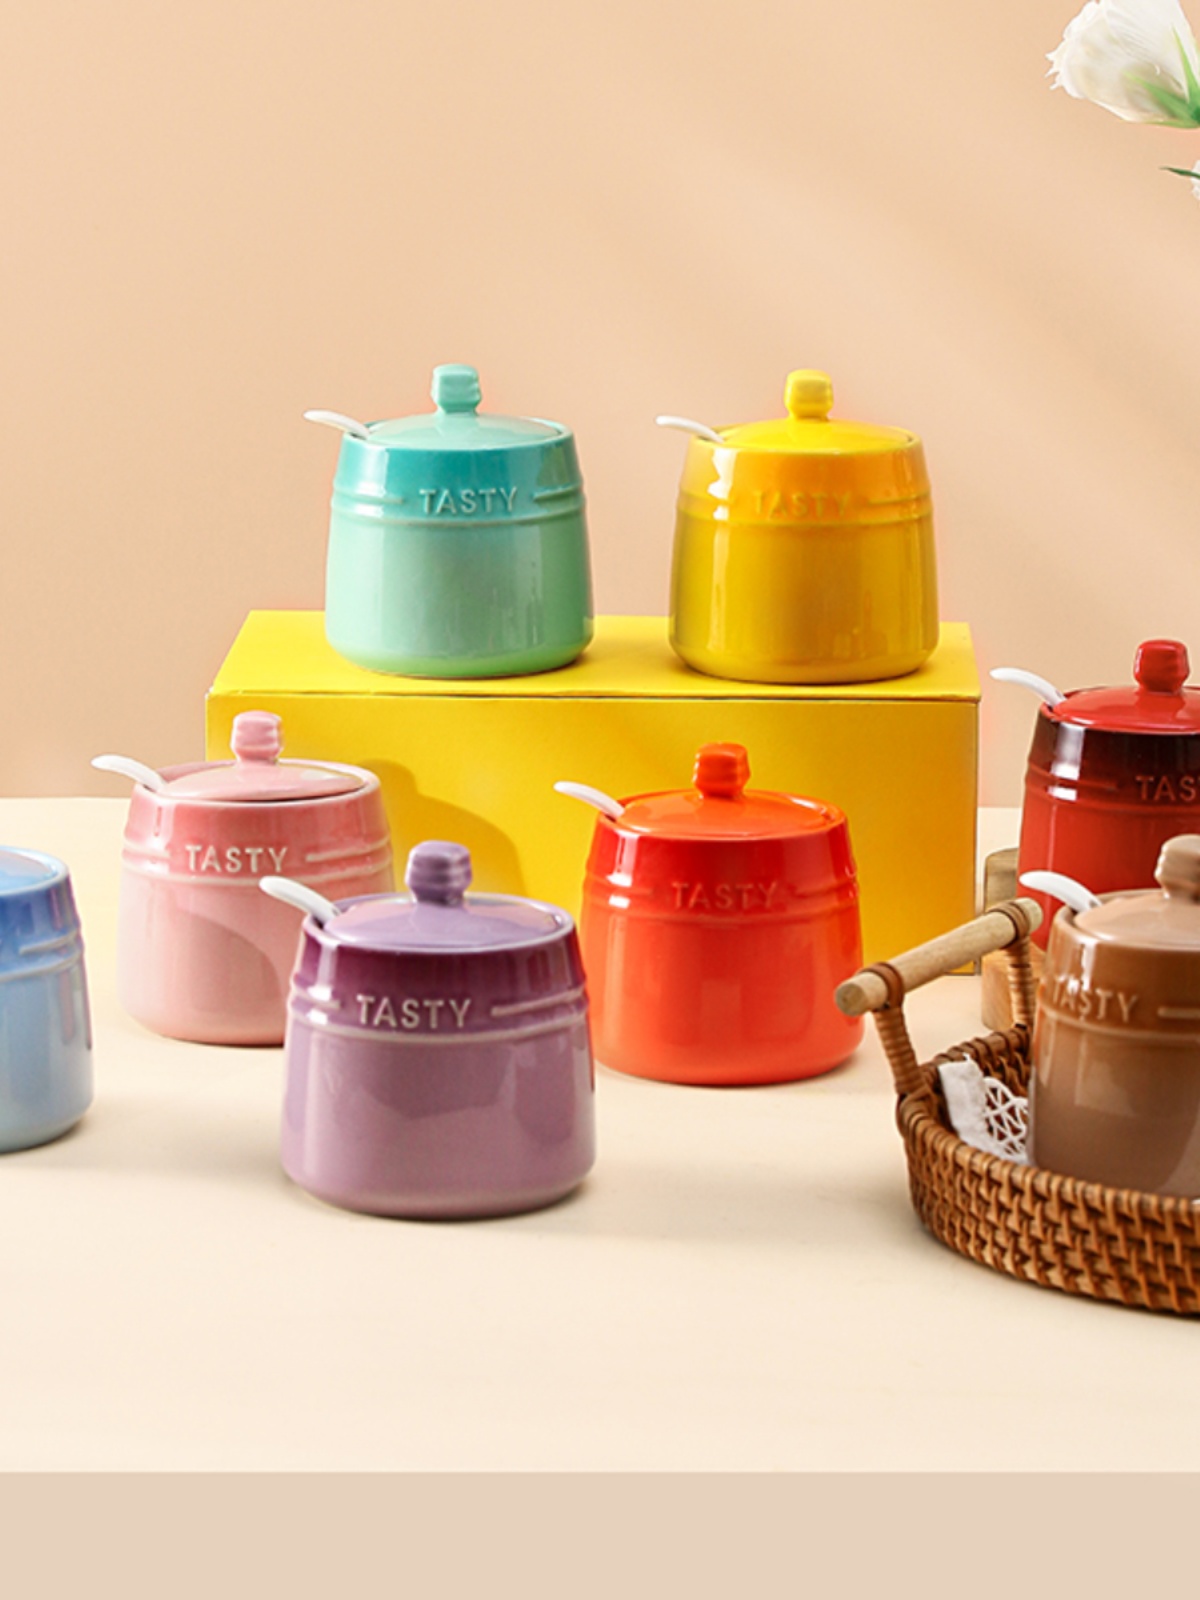 歐式簡約廚房調味罐 陶瓷糖罐鹽罐調料盒漸變色收納調味瓶罐 (8.3折)